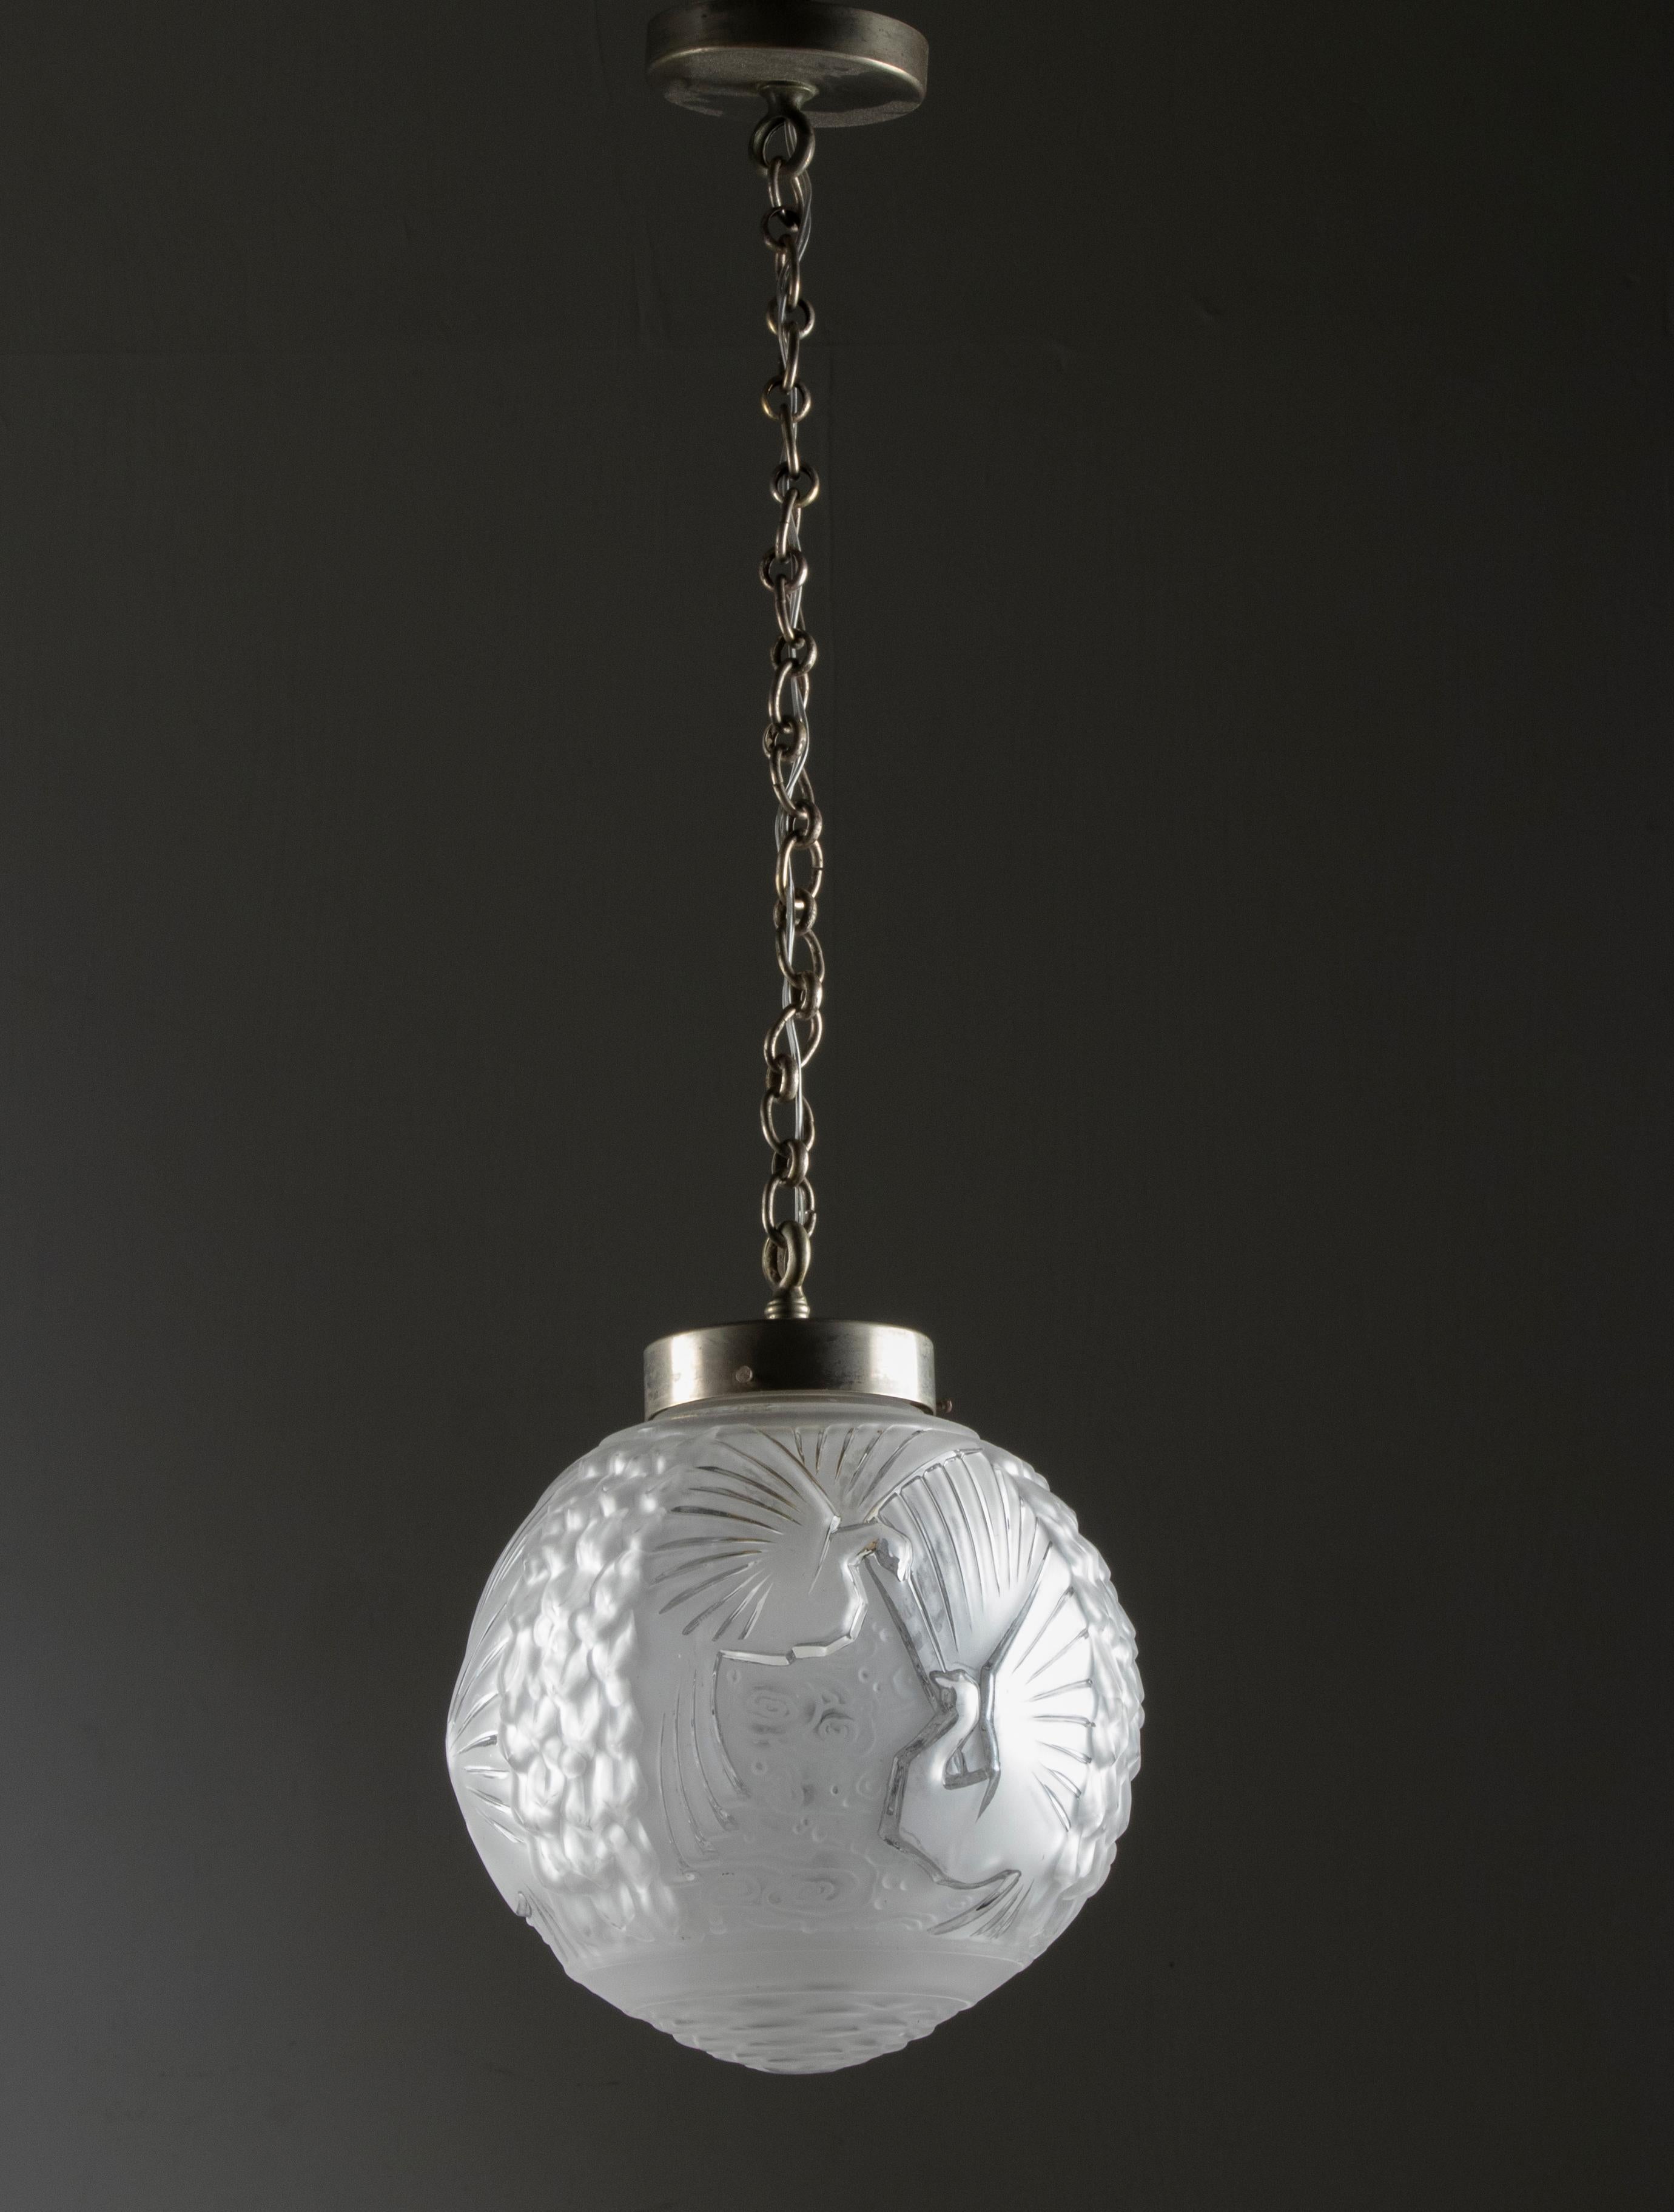 Eine elegante Kugellampe im Art Deco-Stil von Muller Frères. Die Galerie des Lampenschirms und die Kette sind aus Metall gefertigt. Sie hat einen Schirm aus geformtem Milchglas, der mit Pfauenvögeln verziert ist und von Muller Frères hergestellt